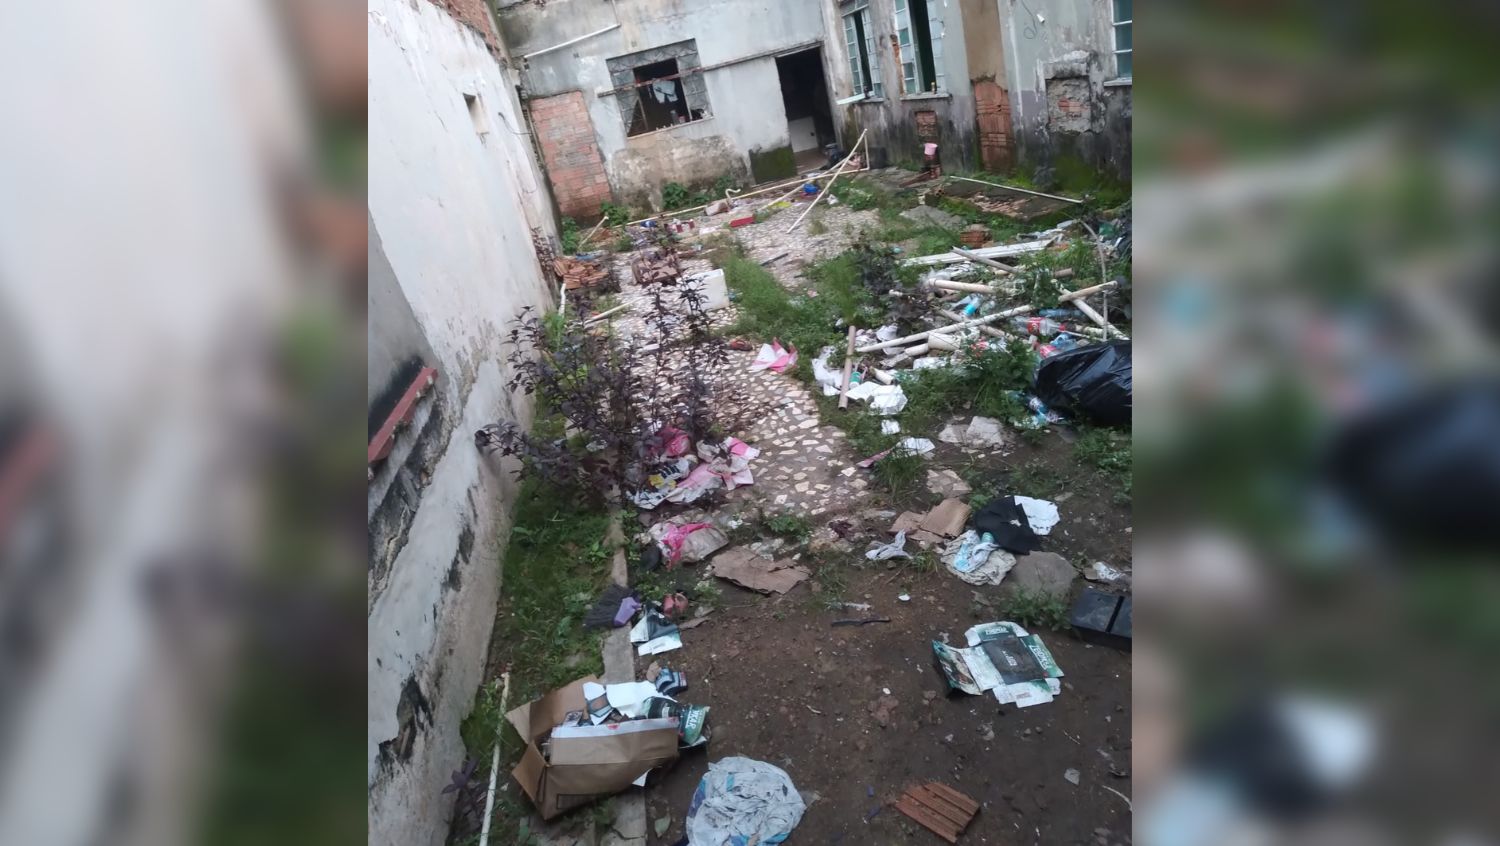 PEDIDO DE SOCORRO: Moradores reclamam de casa abandonada no Centro de Porto Velho